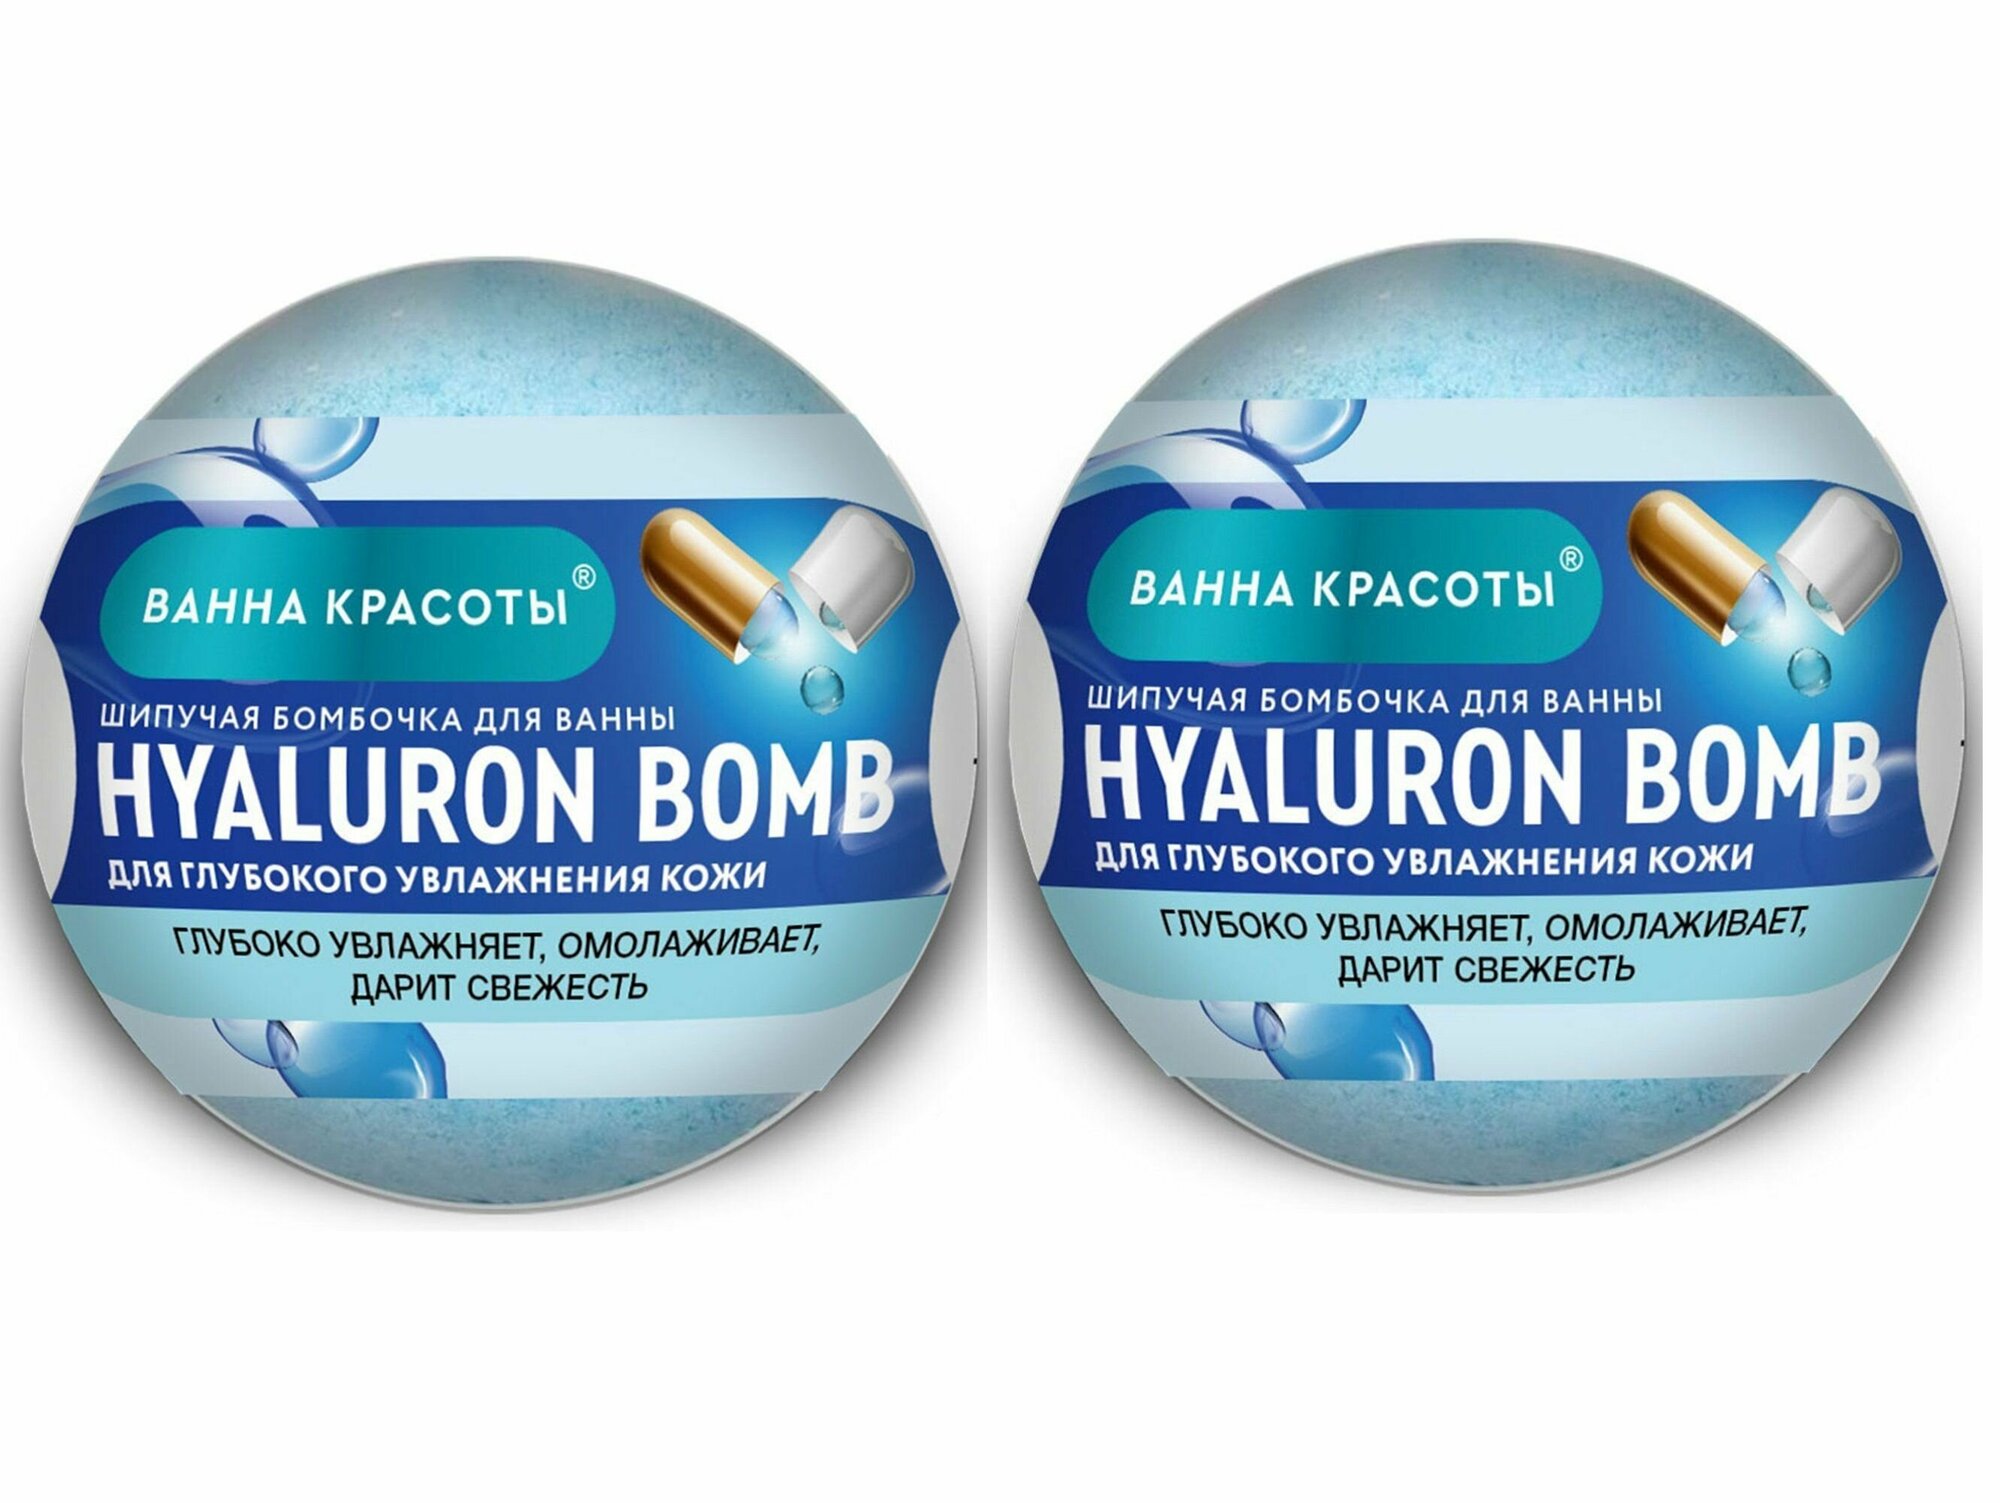 Ванна красоты Шипучая бомбочка для ванны Hyaluron Bomb, 110 гр,2 шт